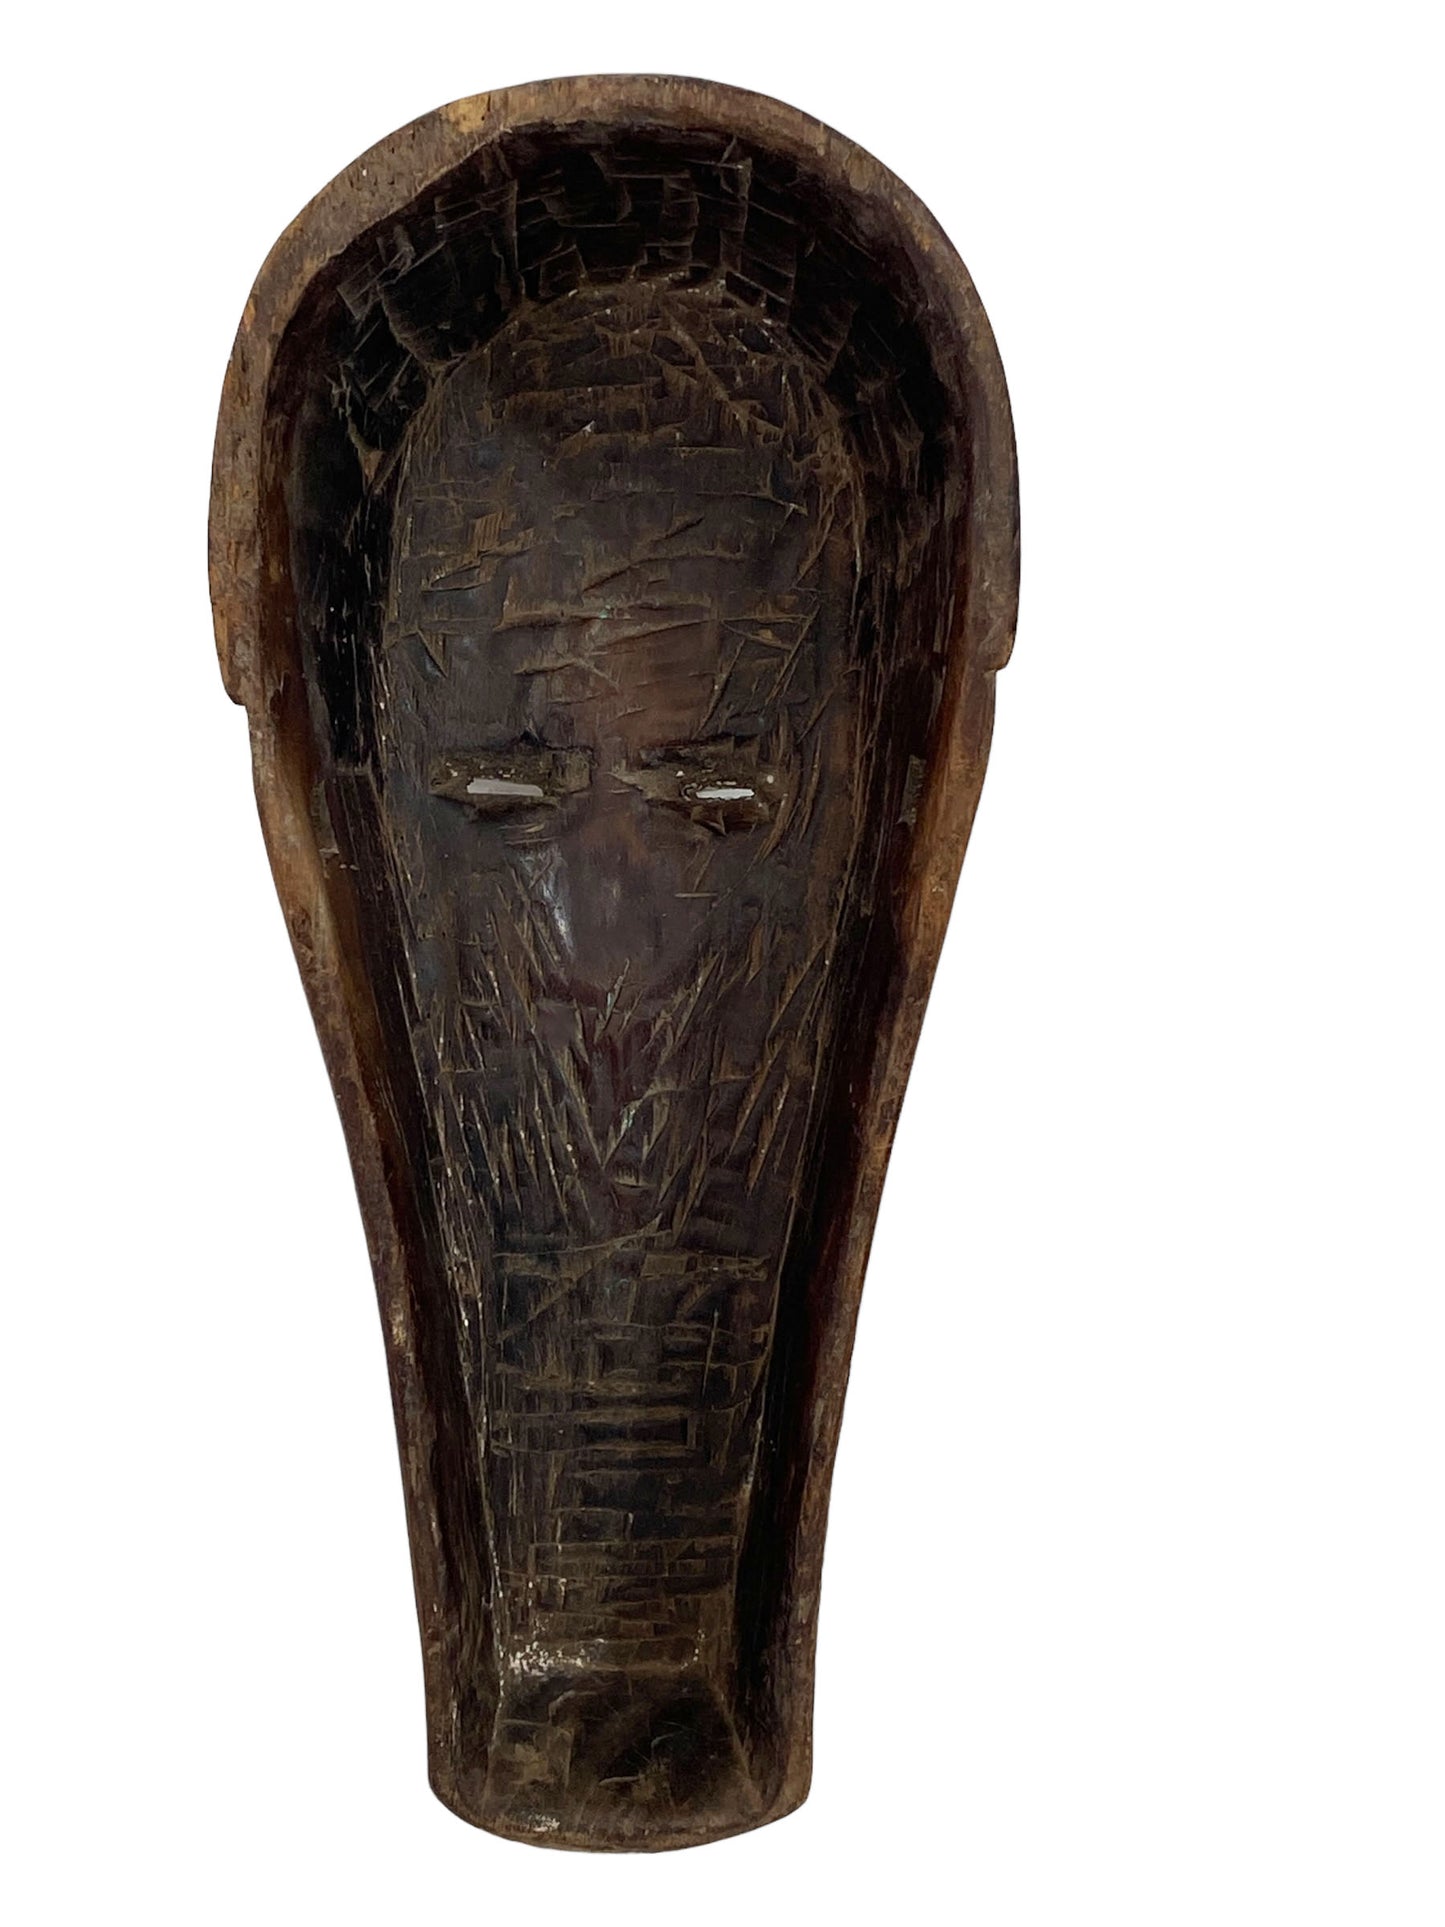 # 5381 Fang Mask Elongated Face Gabon African Mask 18" H